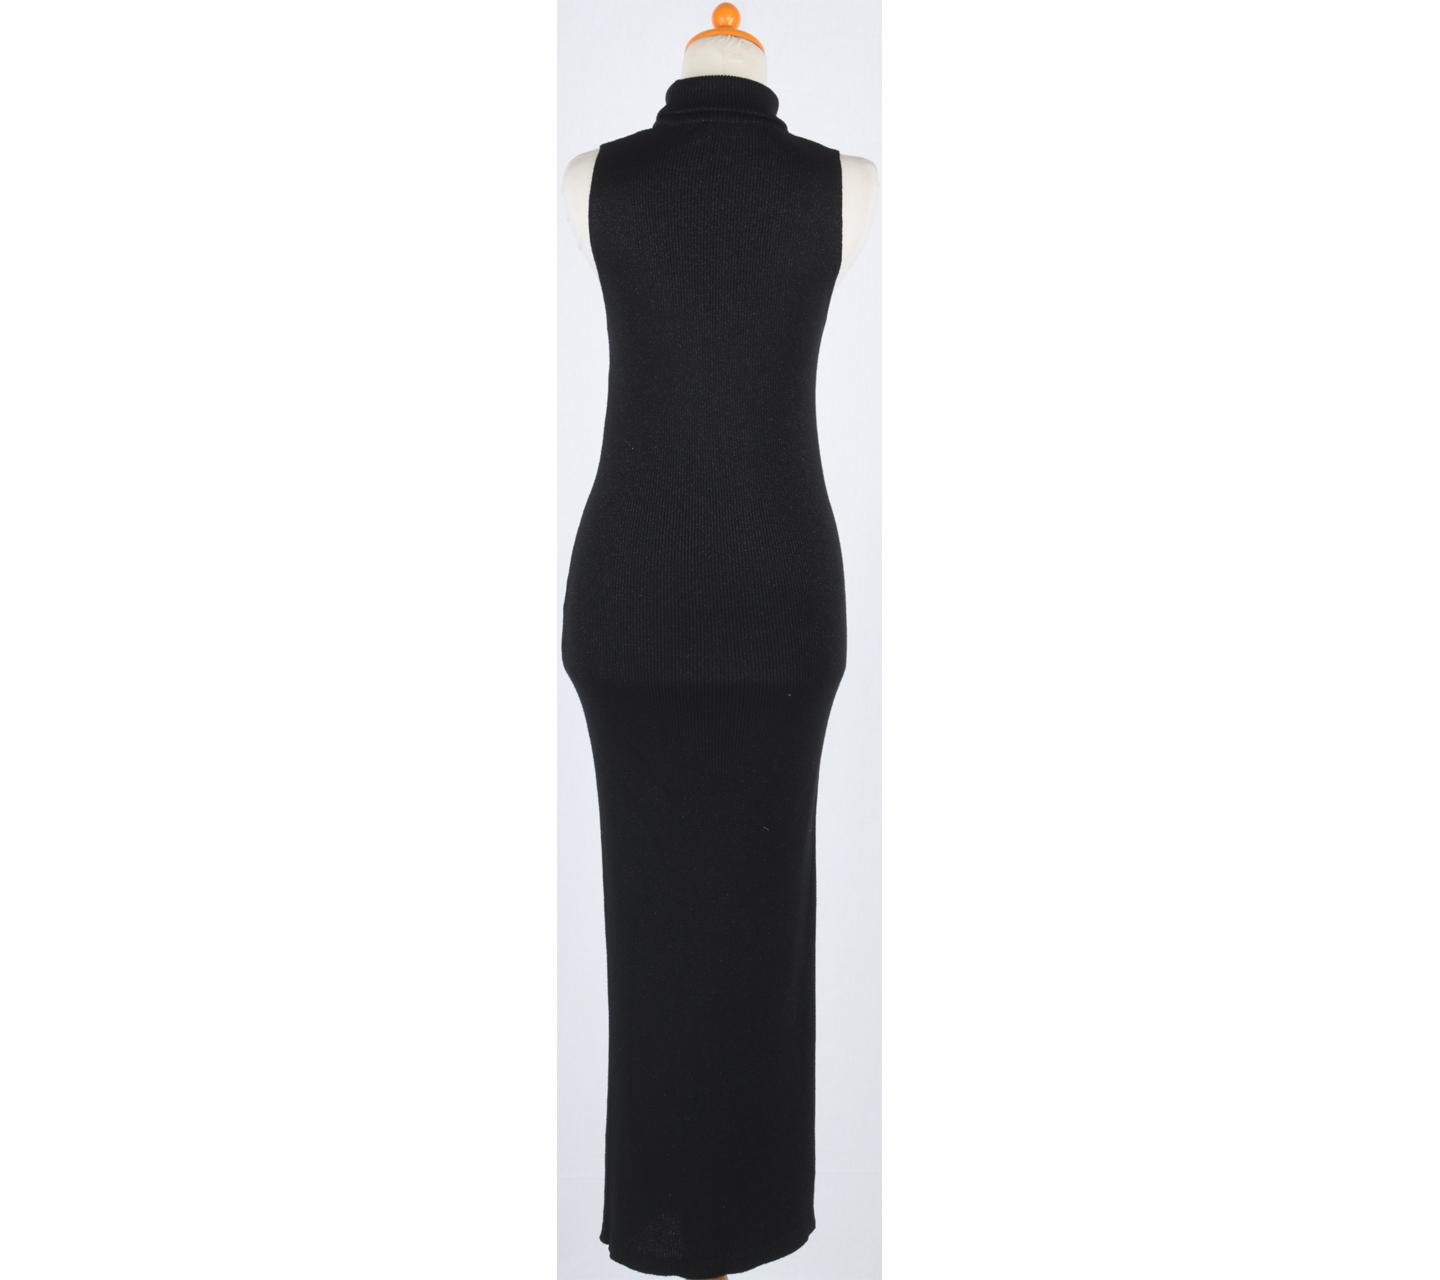 Zara Black Glittery Long Dress